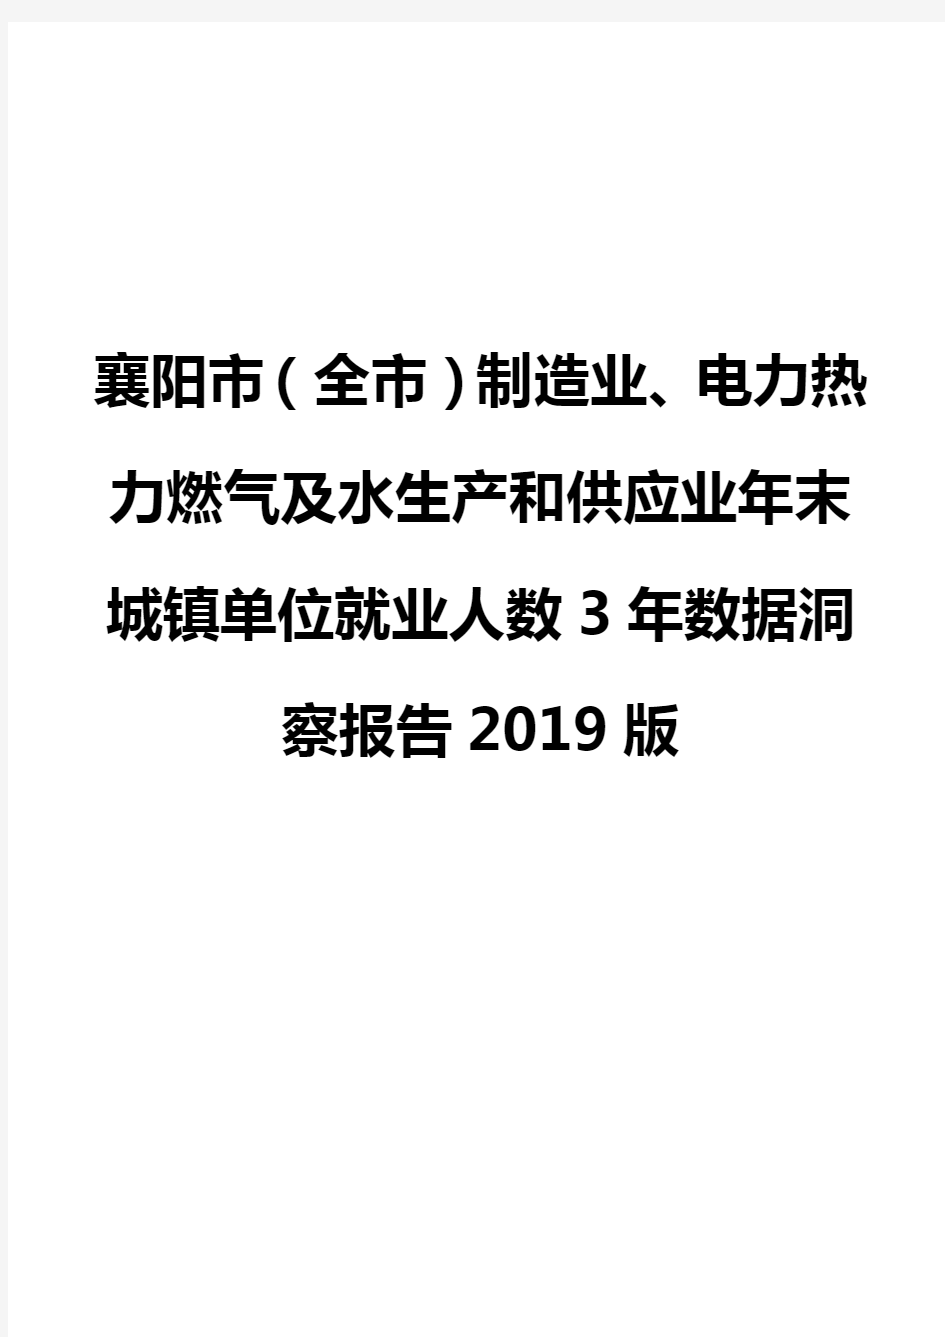 襄阳市(全市)制造业、电力热力燃气及水生产和供应业年末城镇单位就业人数3年数据洞察报告2019版